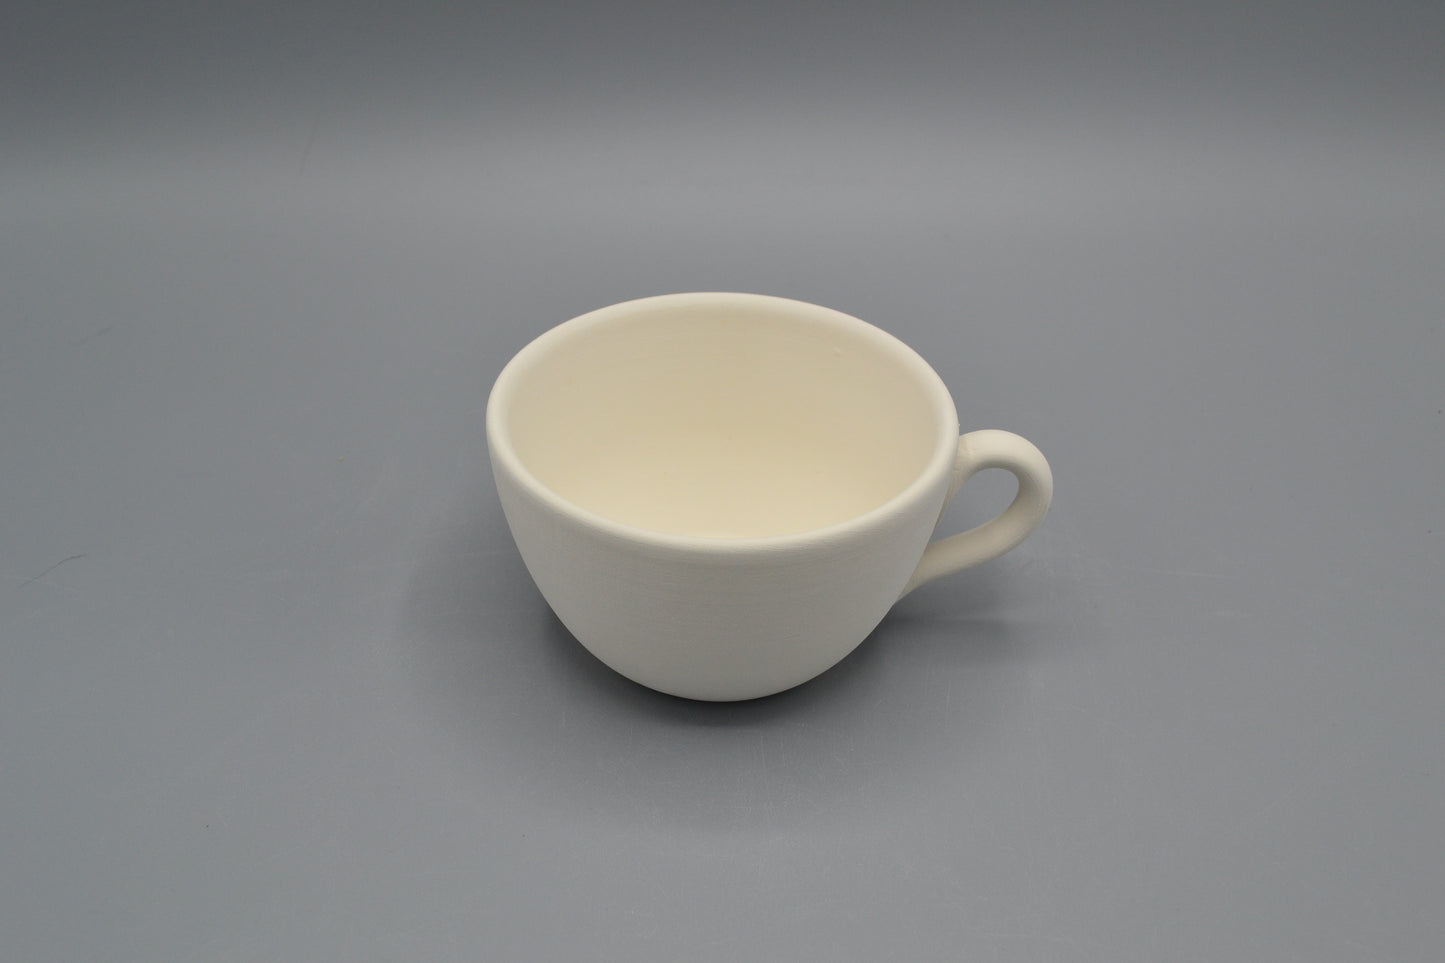 Tazza Cappuccino in ceramica semilavorata GREZZA da dipingere